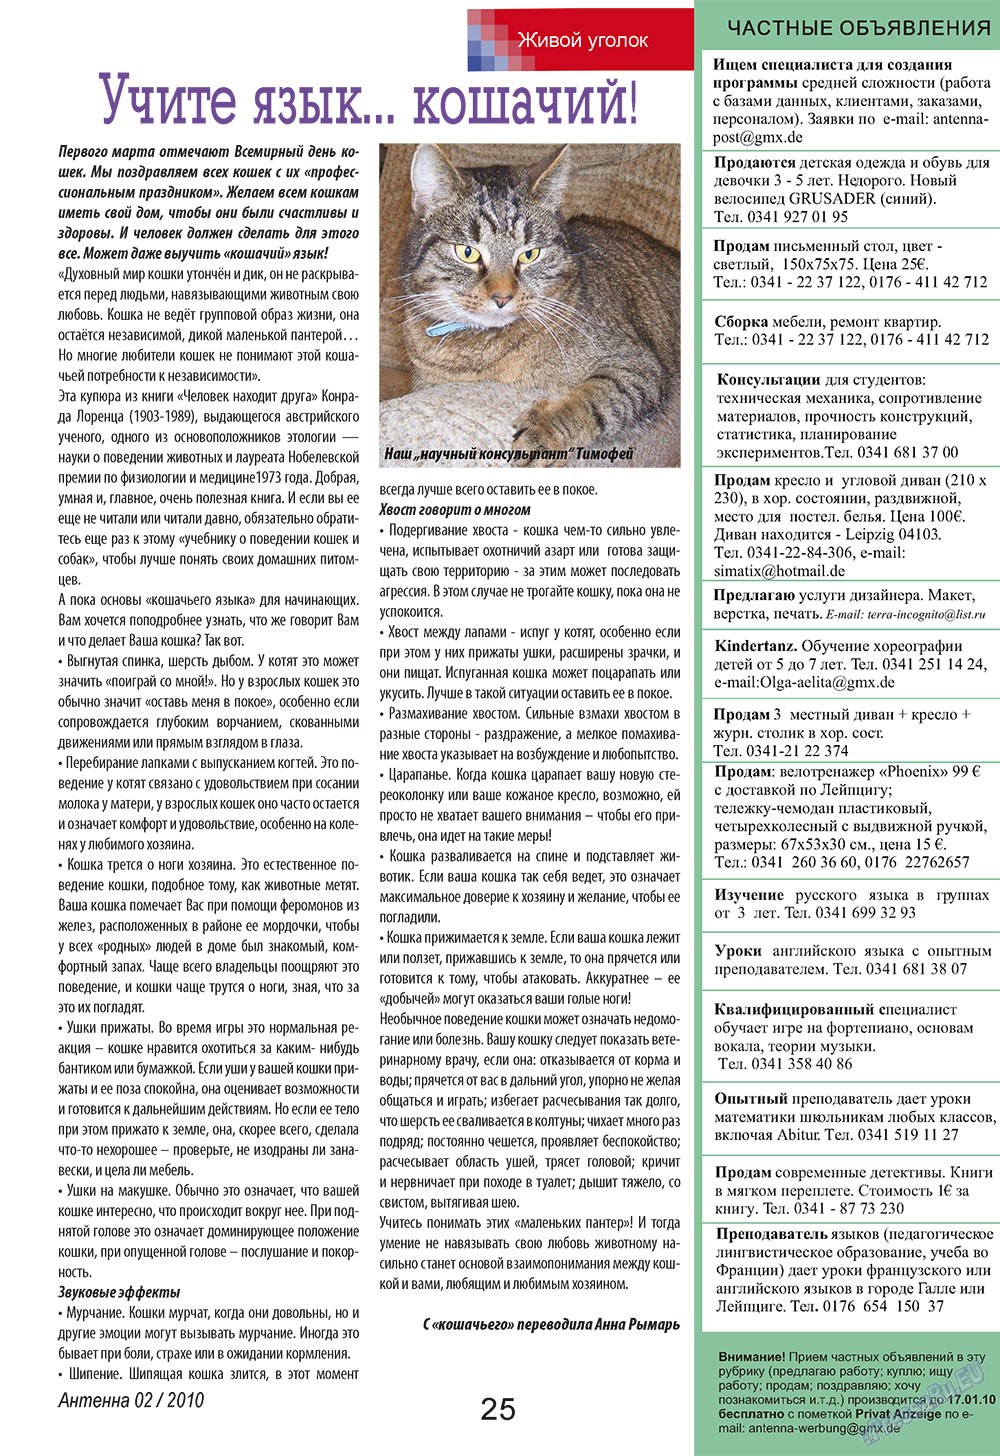 Антенна, журнал. 2010 №2 стр.25